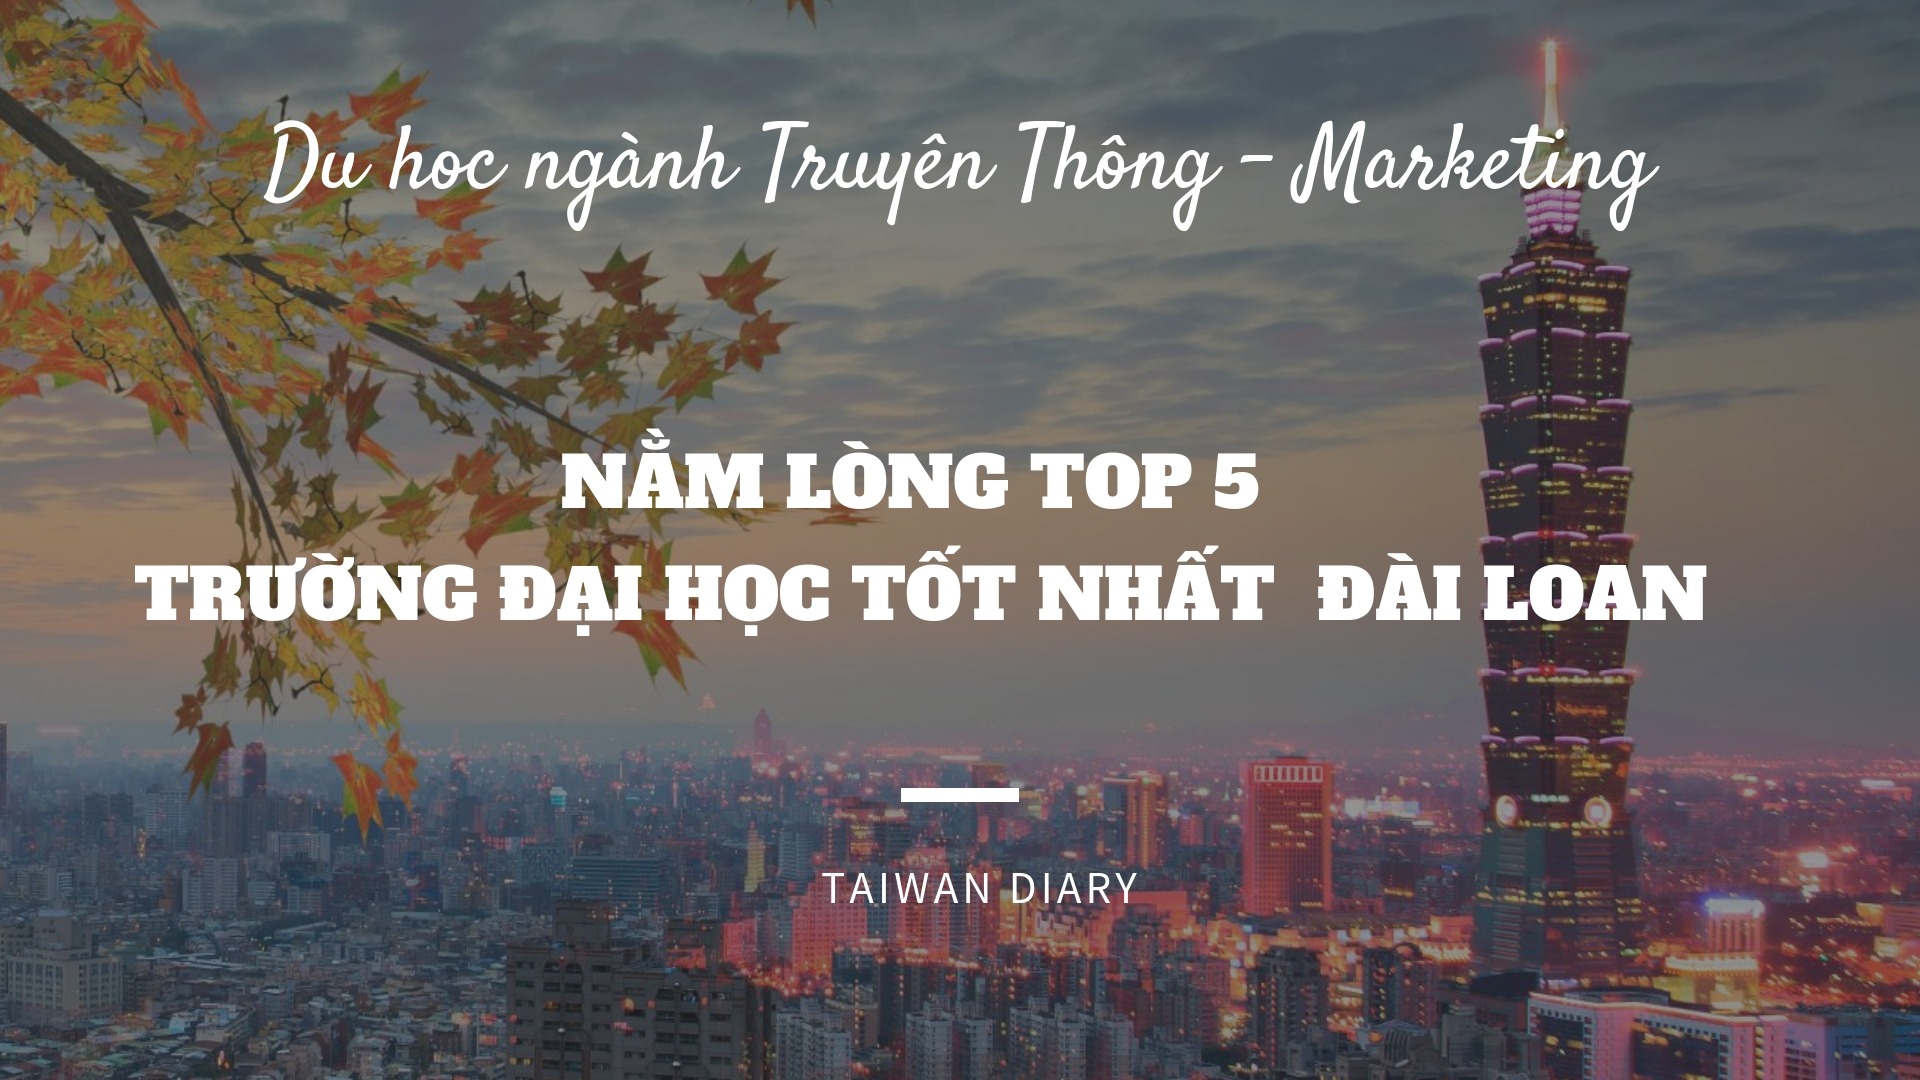  Taiwan “mở đường” giúp bạn tiến xa hơn trong ngành Truyền thông - Marketing